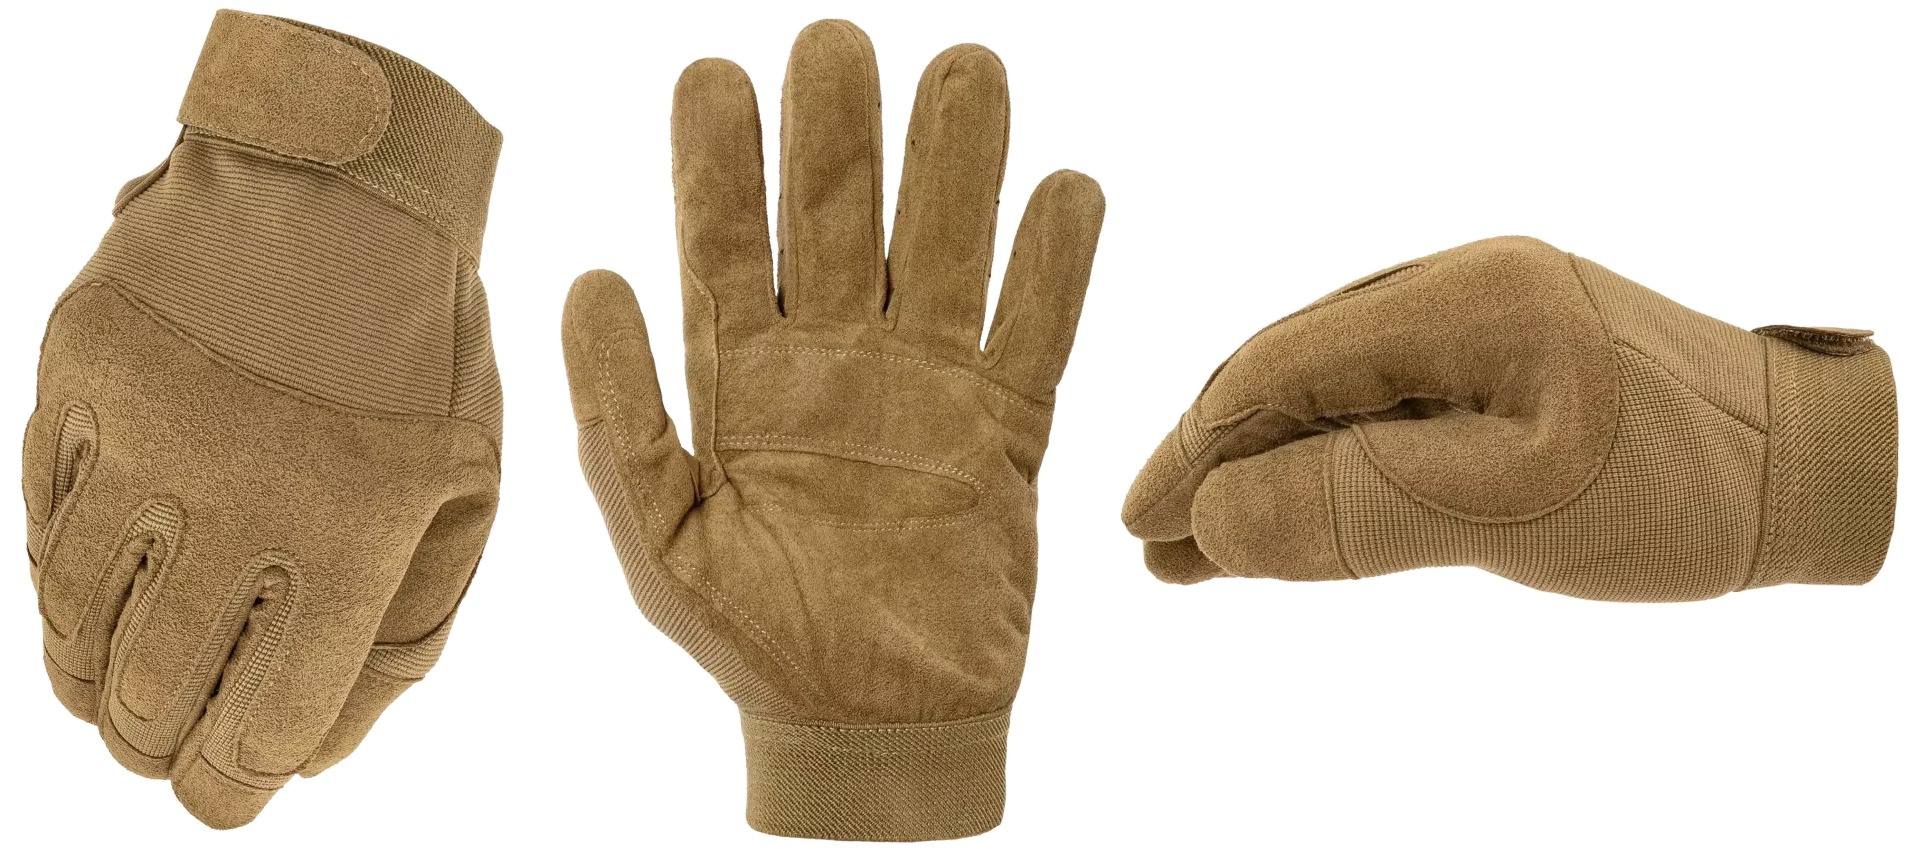 Zaščitite in udobno ohranjajte svoje roke s kakovostnimi vojaškimi vsestranskimi rokavicami coyote barve. Idealne za vojaške operacije, taktične vaje, airsoft, paintball in druge aktivnosti na prostem. Naročite zdaj!